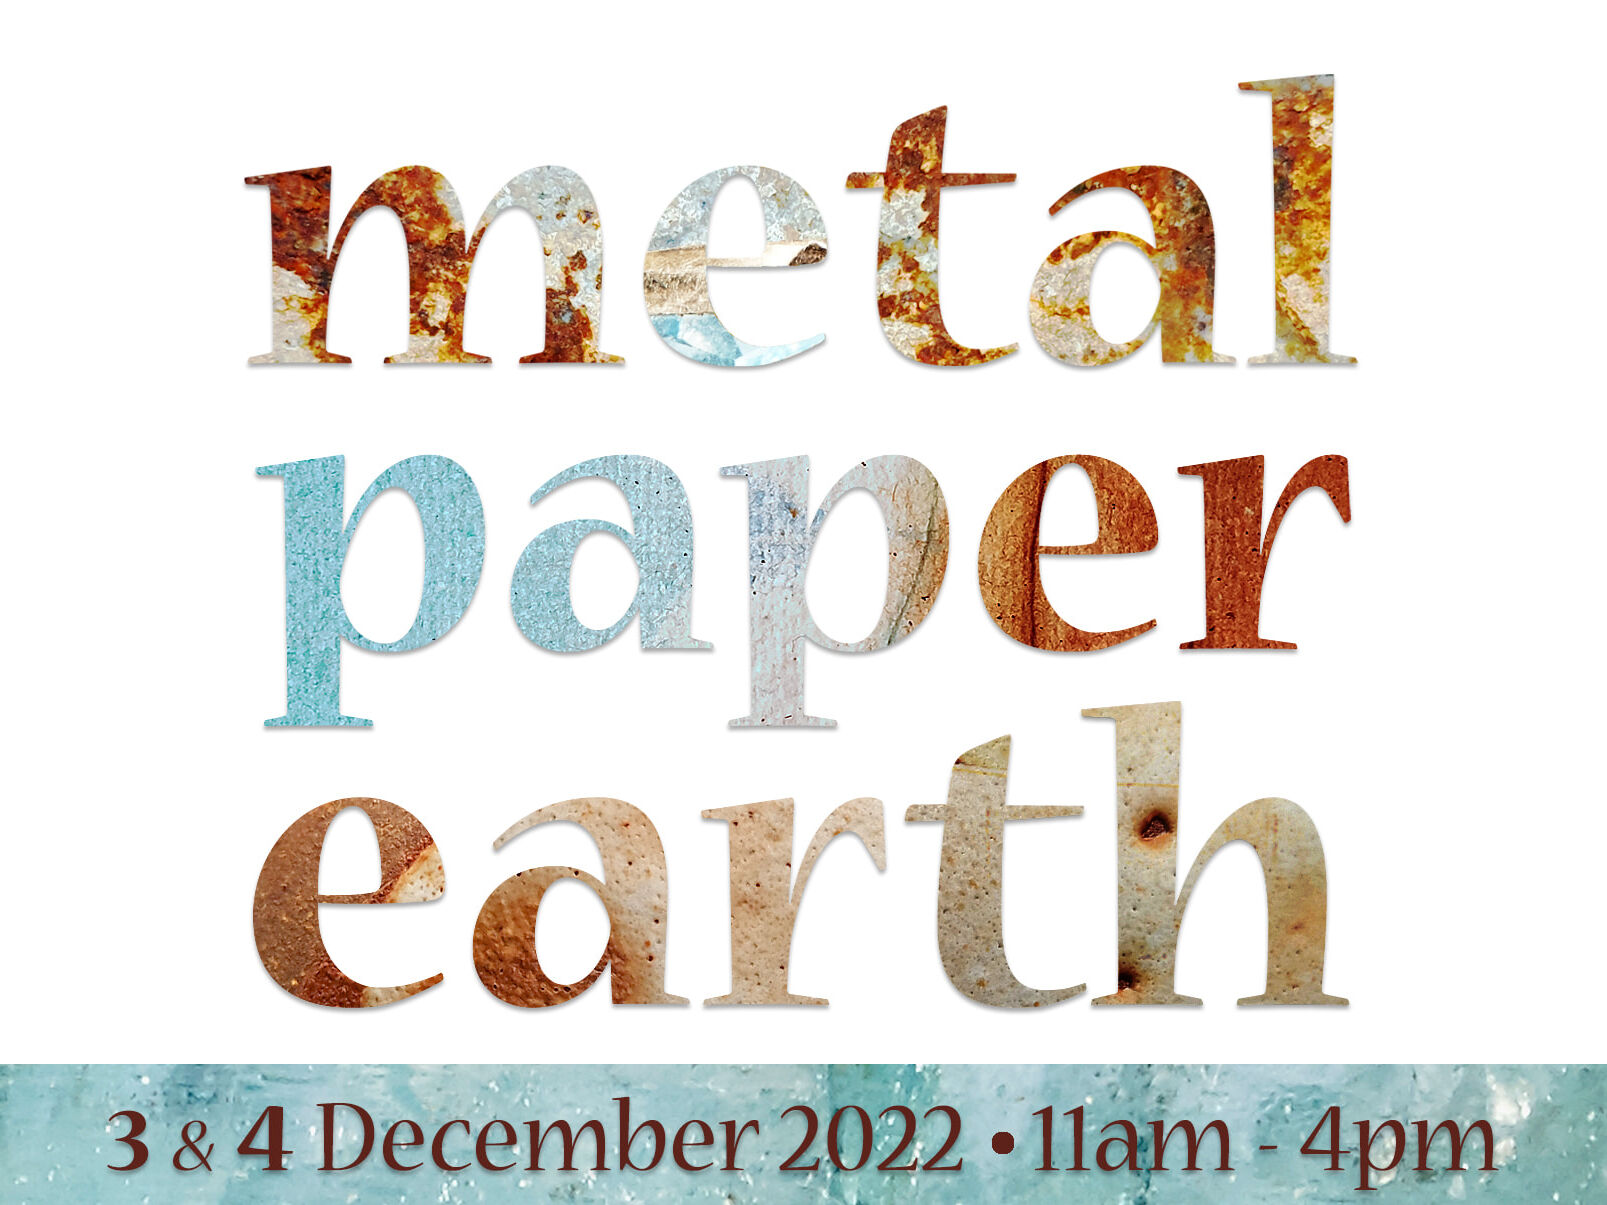 MetalPaperEarth 2022 Invite front